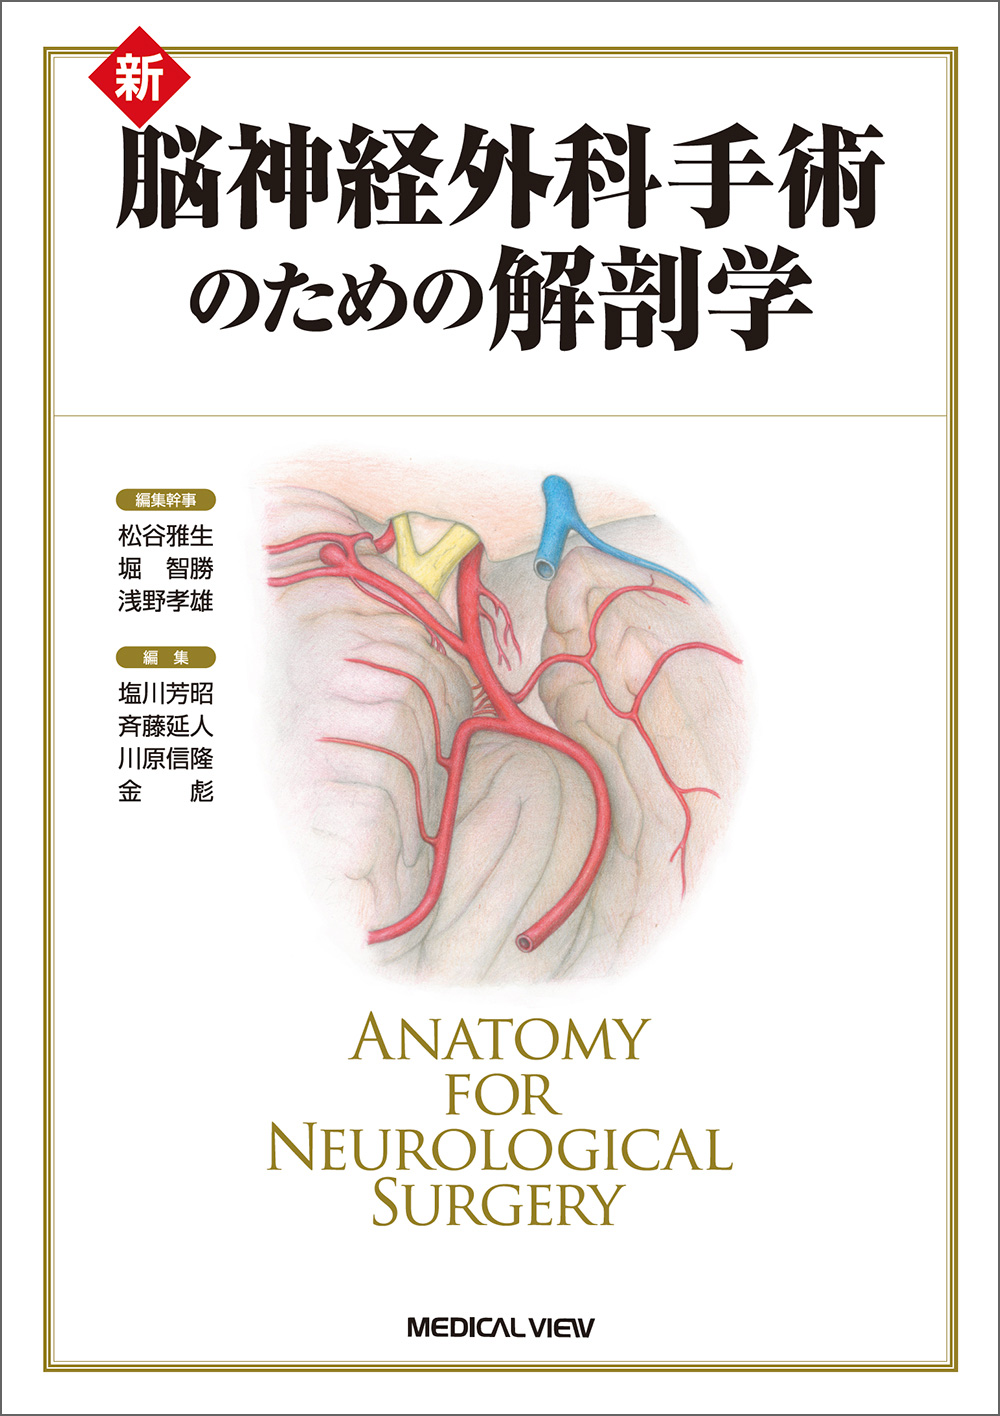 脳神経外科速報 2018年3月号(第28巻3号)特集:解剖学の知識が患者を救う ─Your inner fish